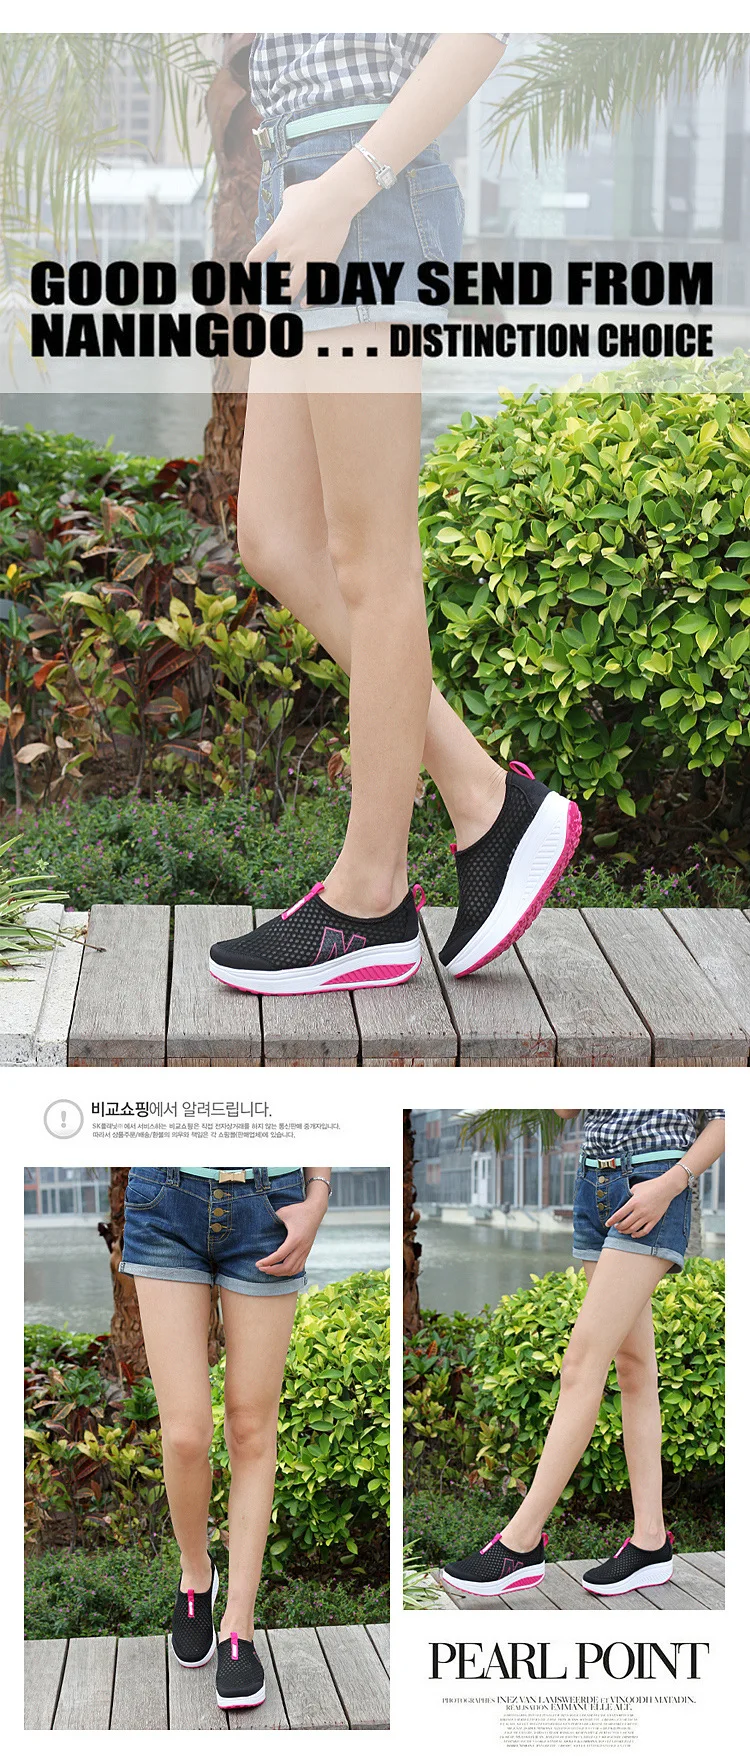 SWYIVY/Обувь для похудения; летние женские кроссовки на платформе; Новинка года; дышащая обувь для похудения; кроссовки на платформе